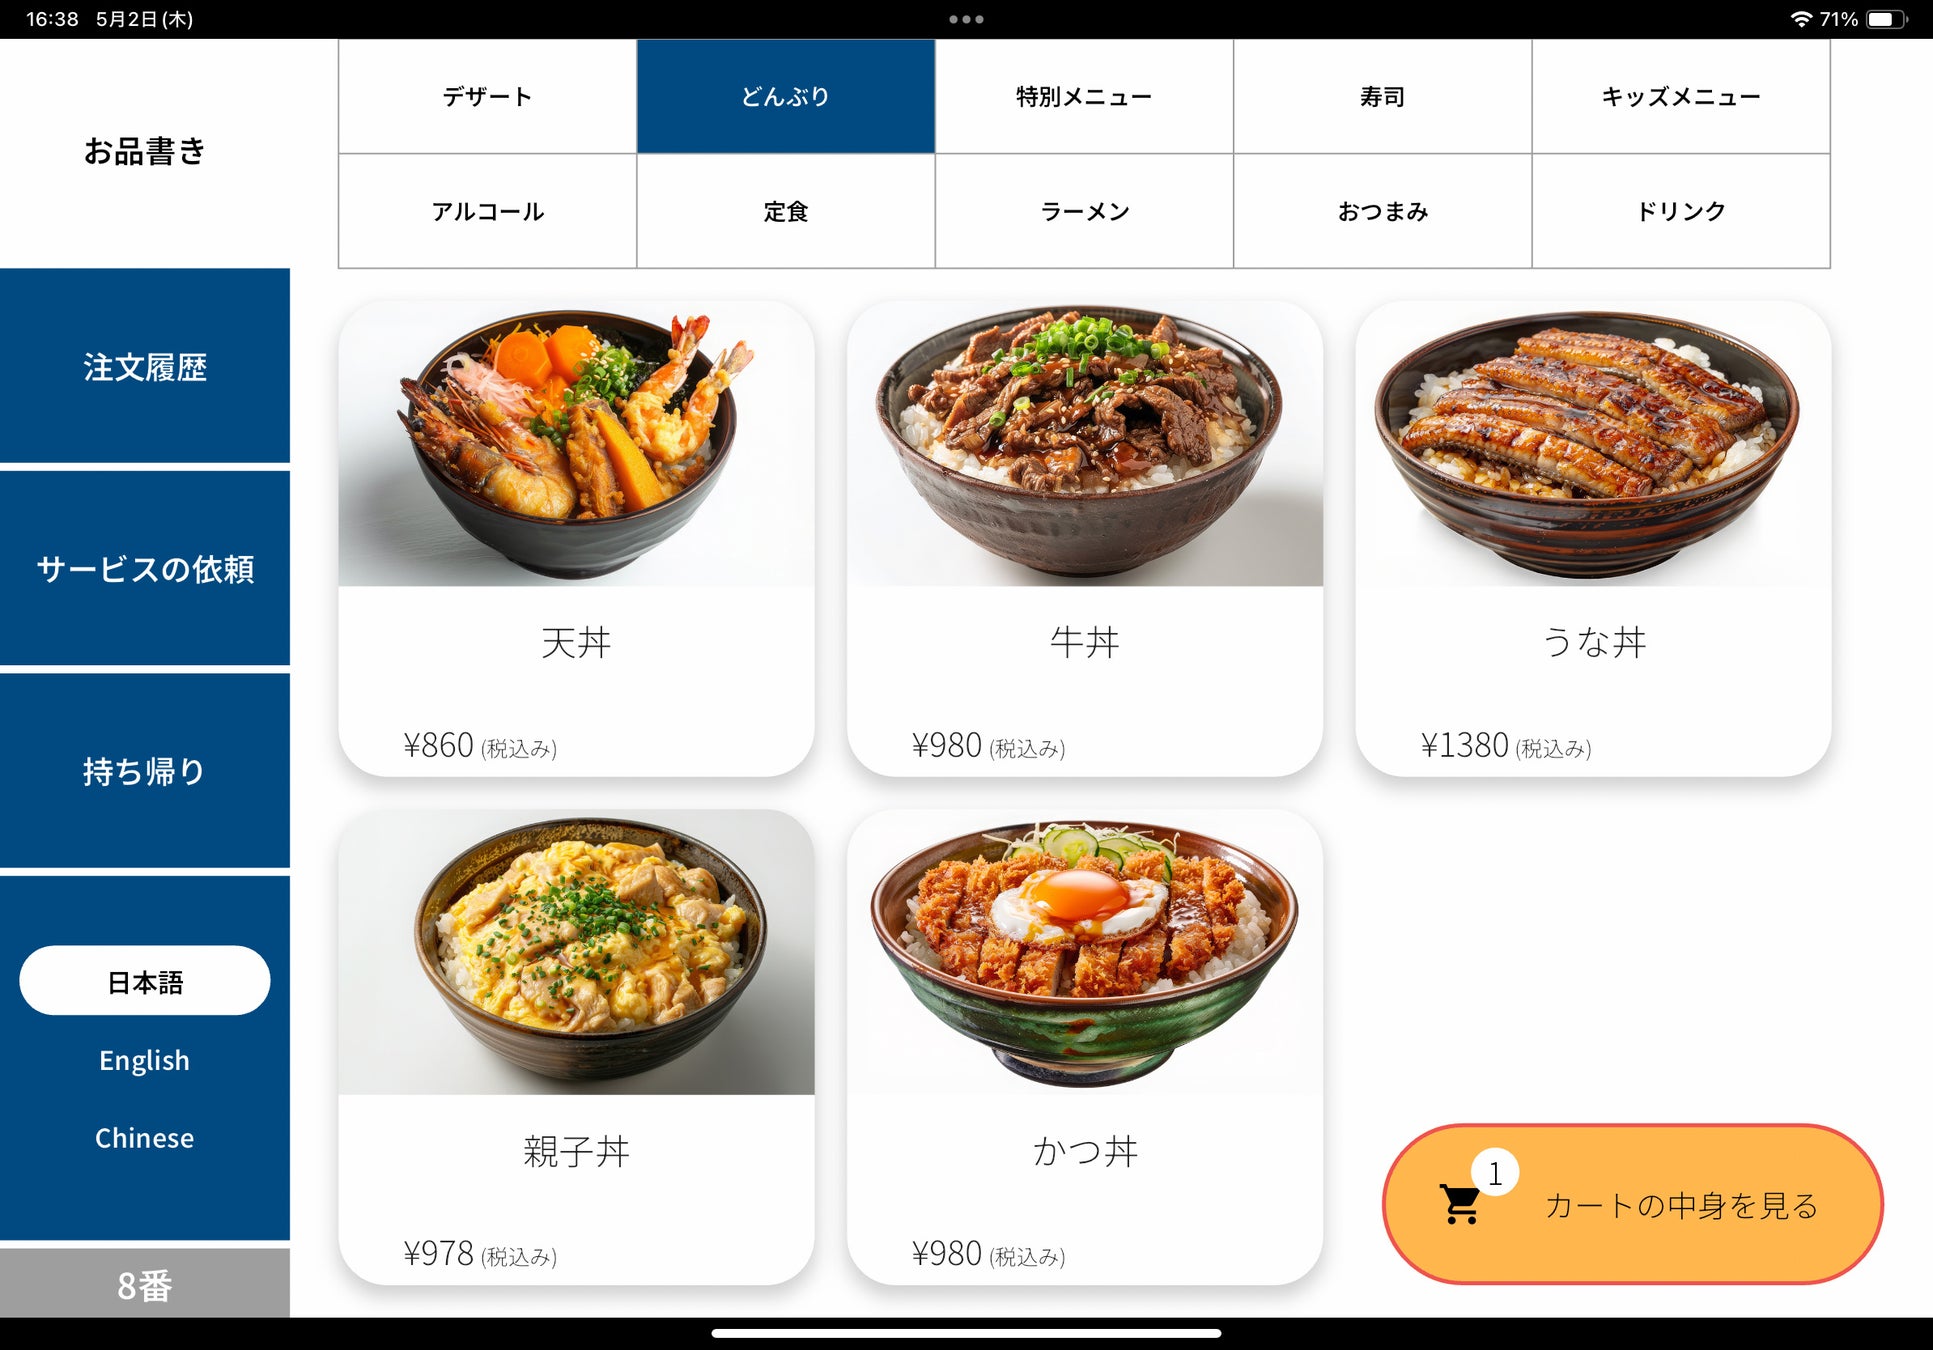 多言語対応の飲食店向けセルフオーダーアプリ「お品書きアプリ」、福島県で販売開始